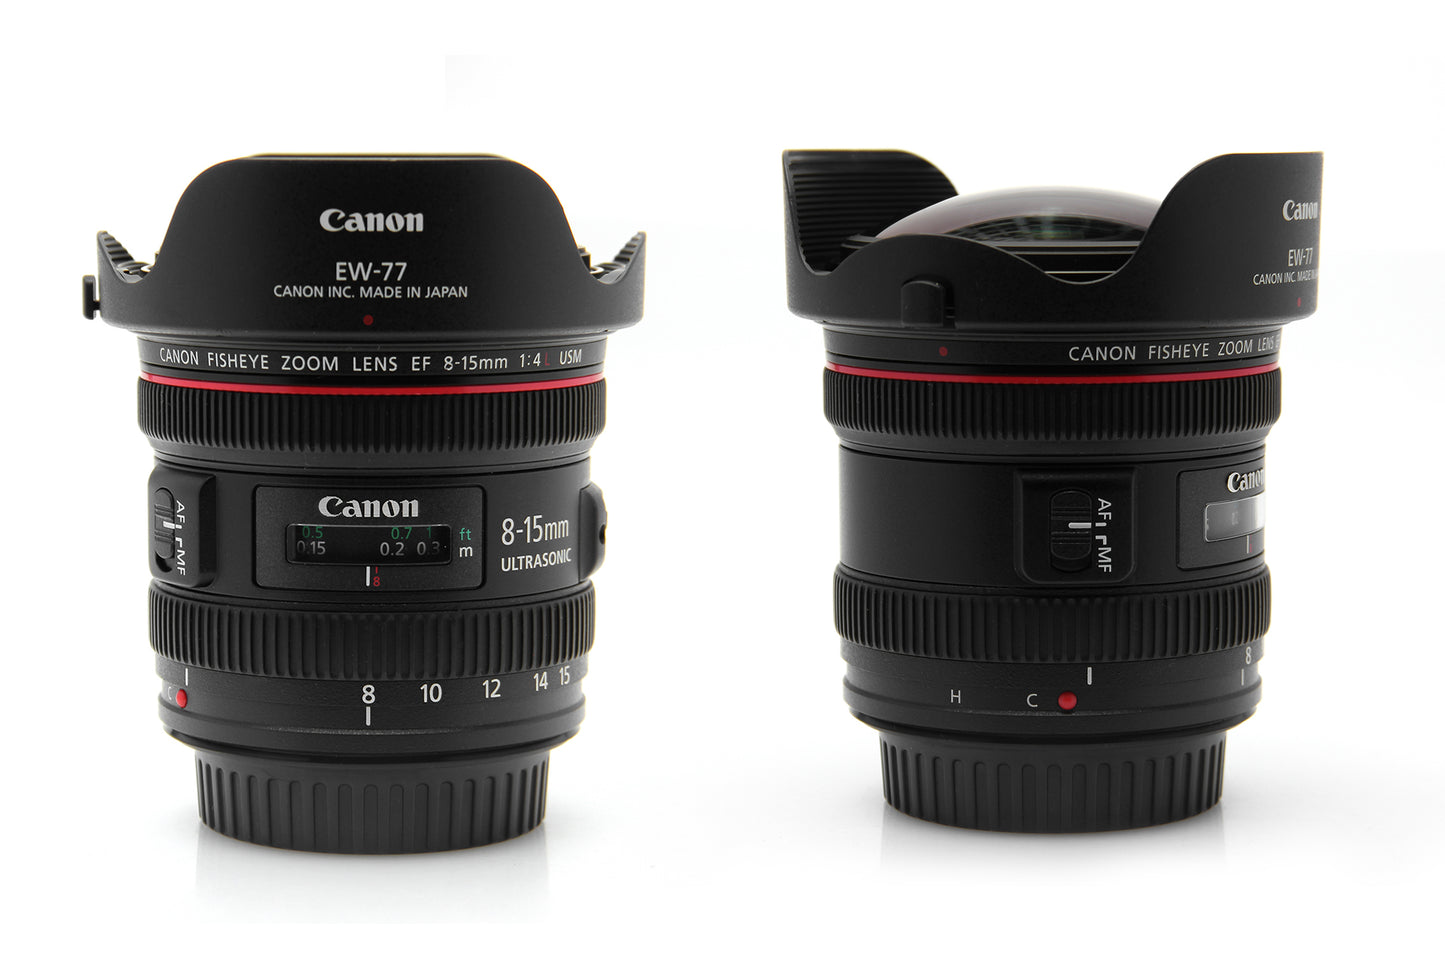 Used Canon EF 8-15mm F4 USM fisheye